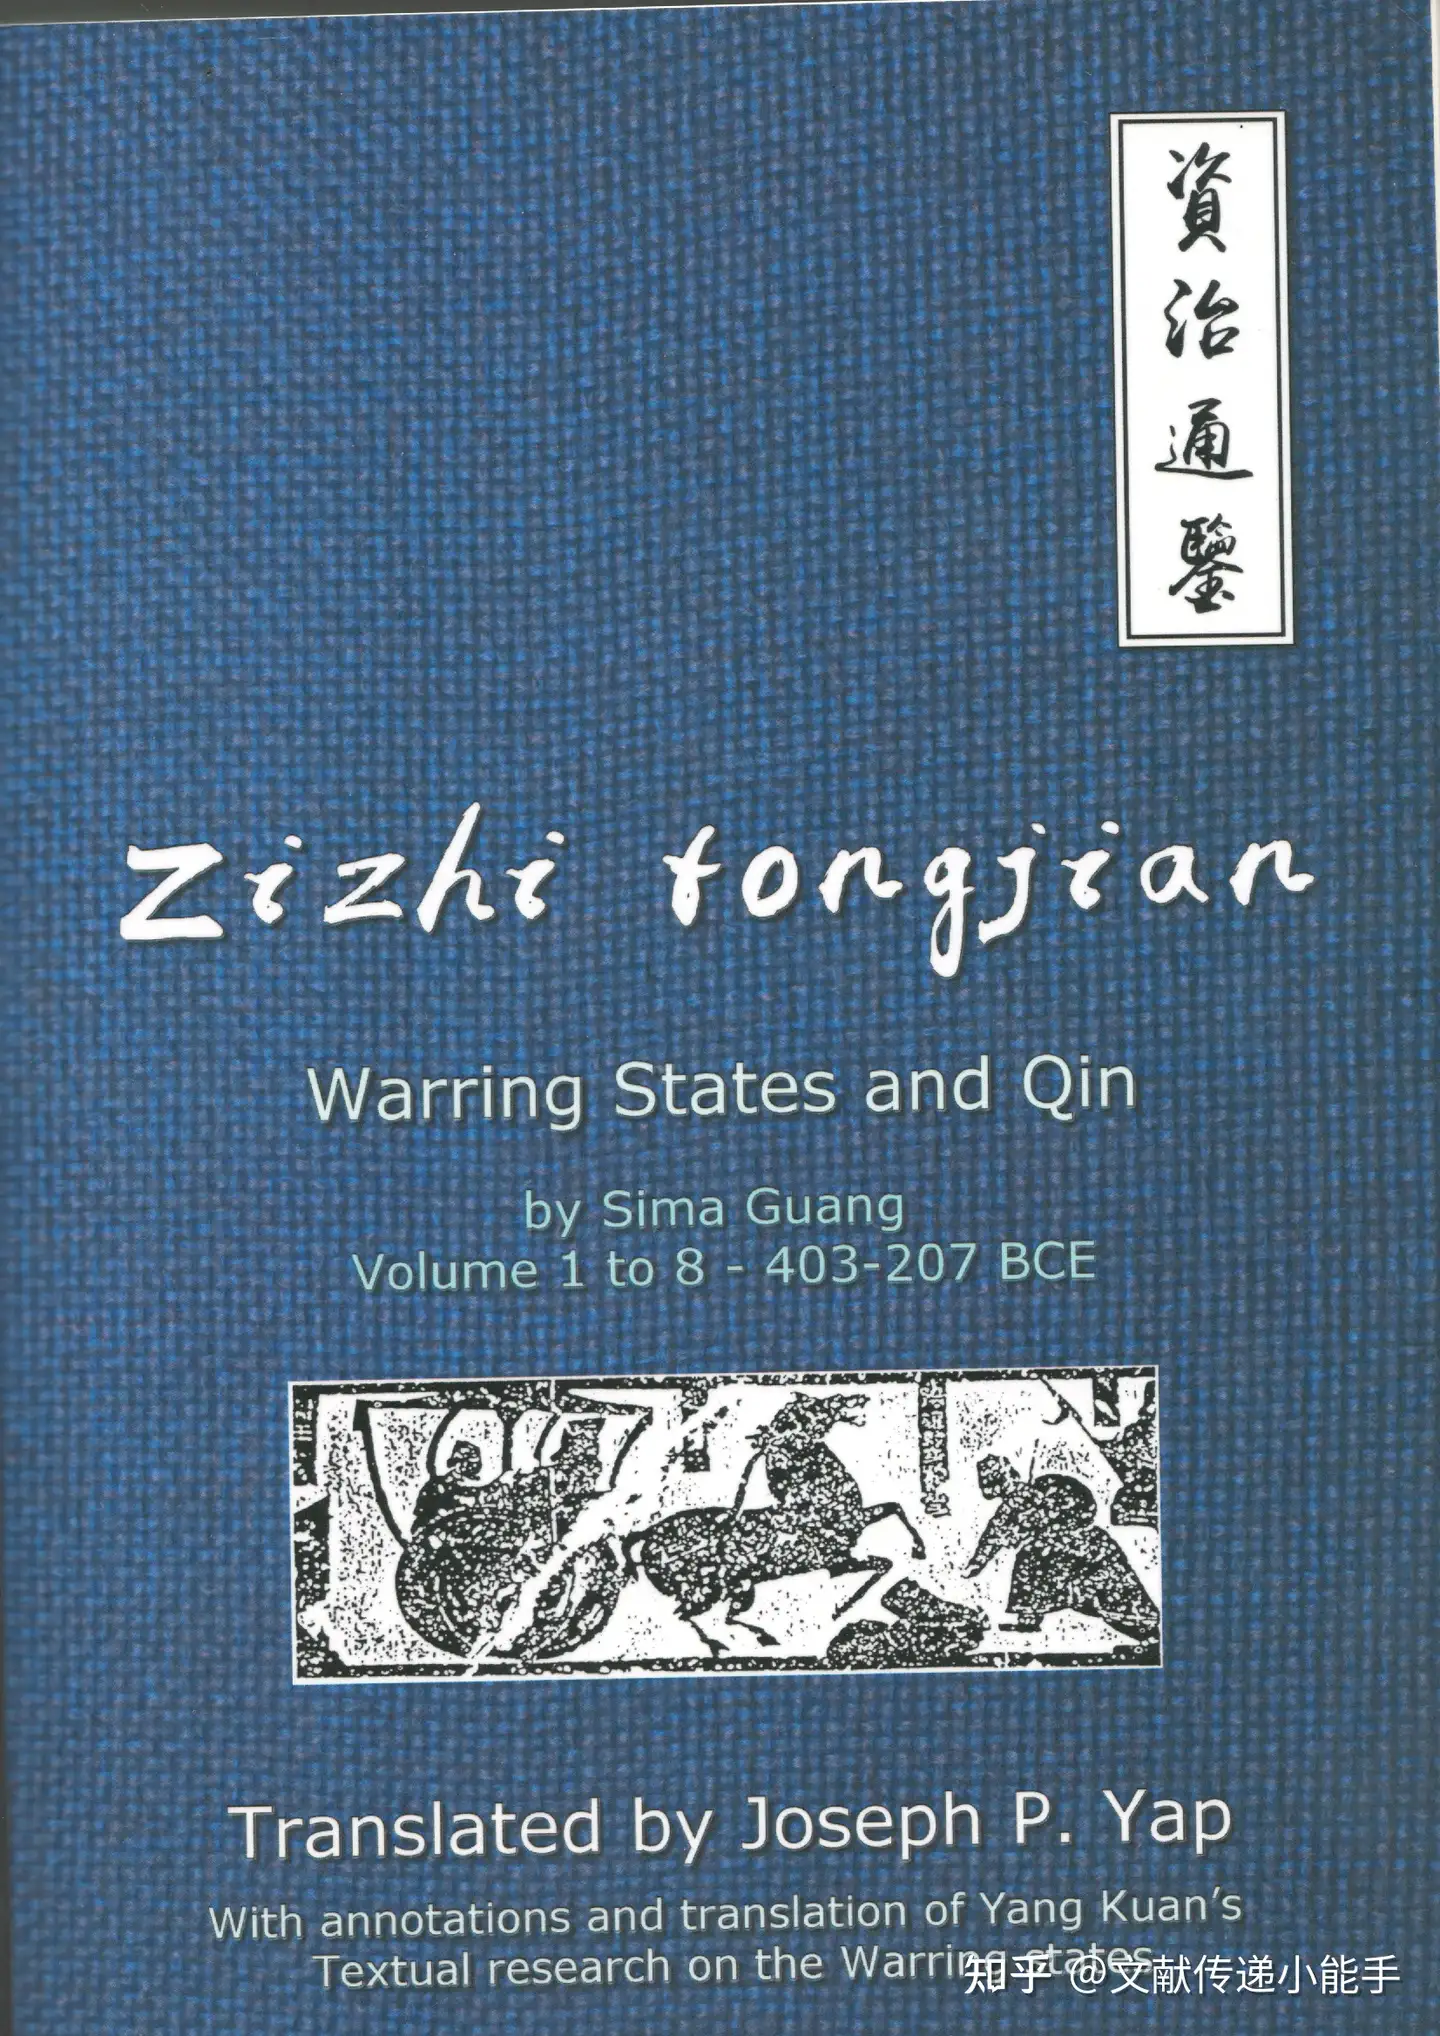 资治通鉴,英译本,英文版,1-8册,Zizhi tongjian: Warring States and Qin 